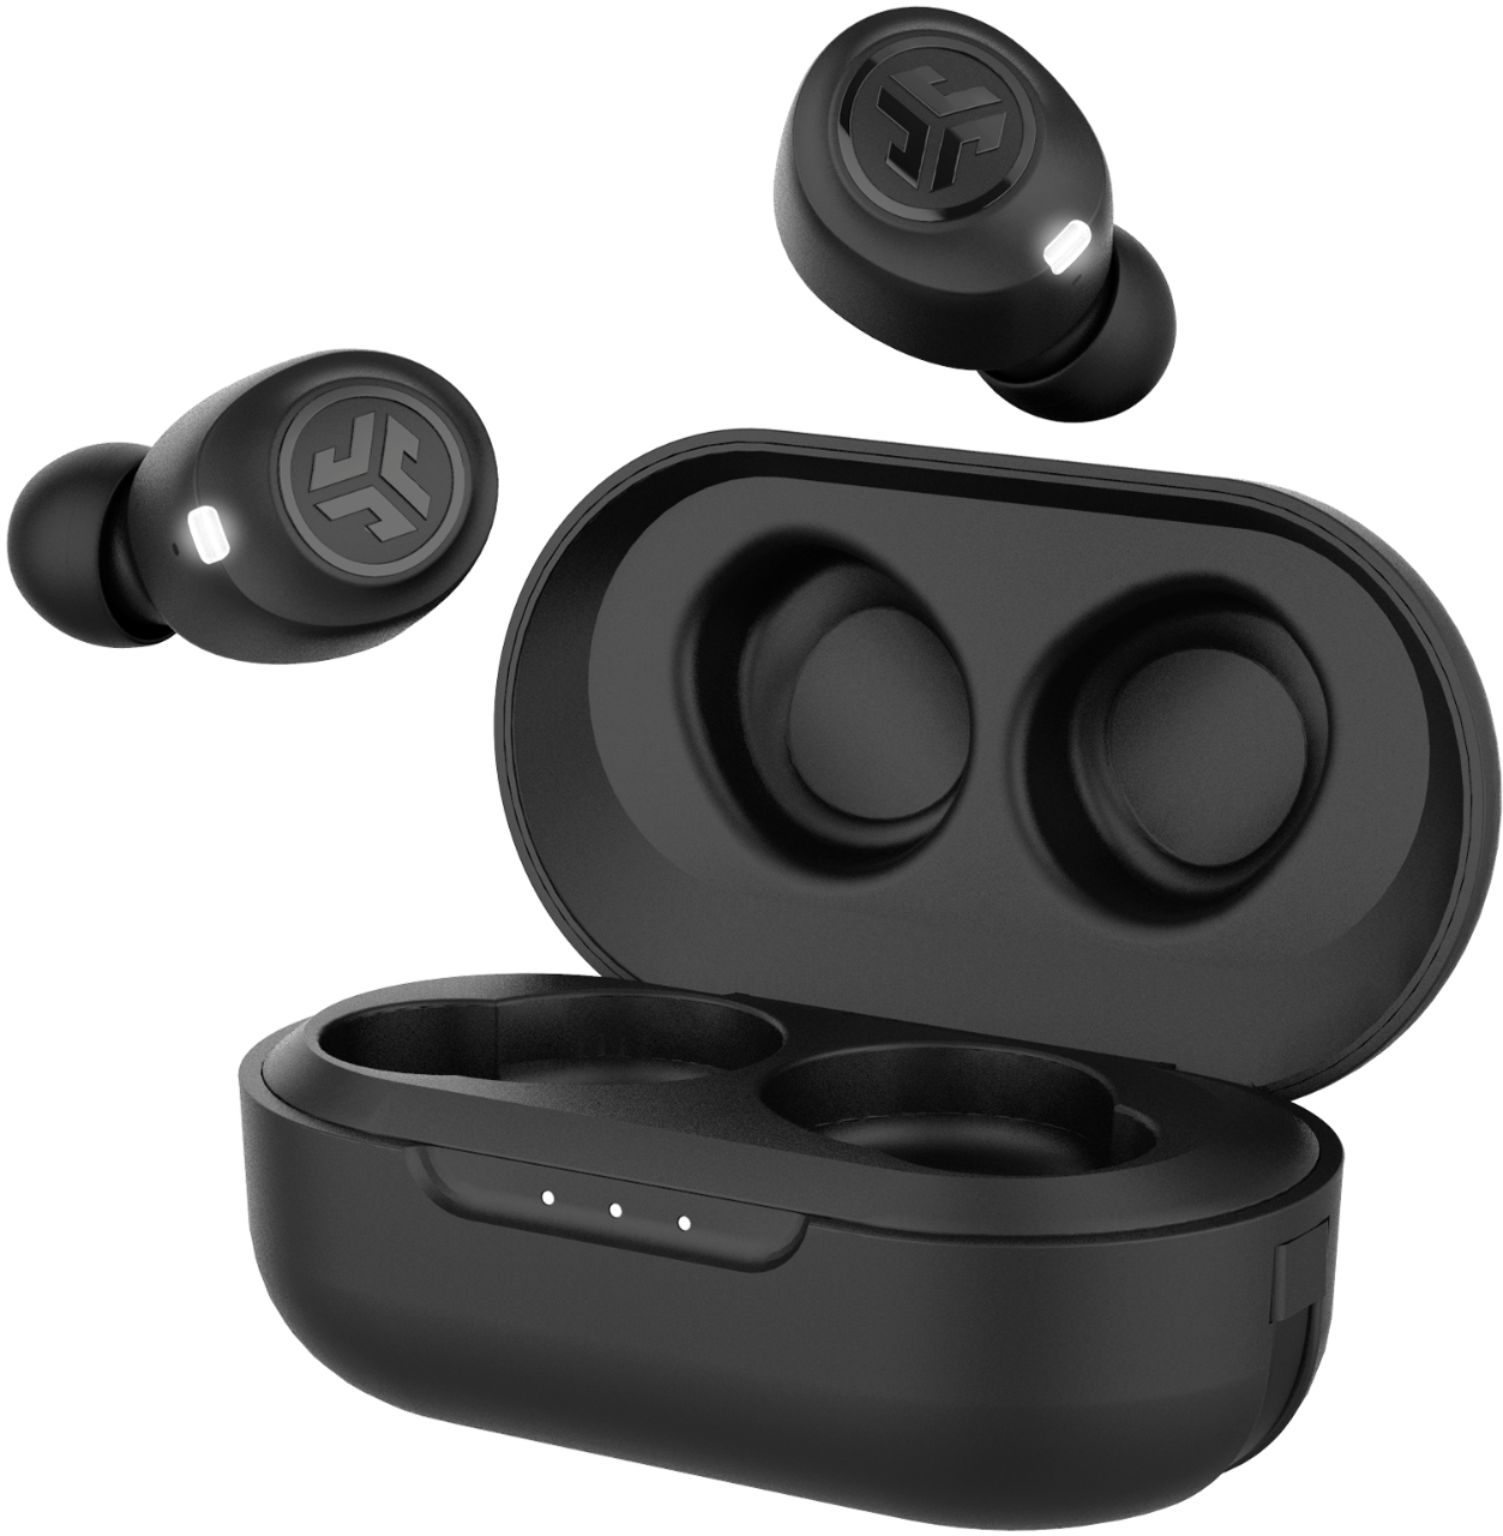 JLab Audio JBuds Air True Wireless Earbud Headphones Black EBJBUDSAIRRBLK82  - Best Buy